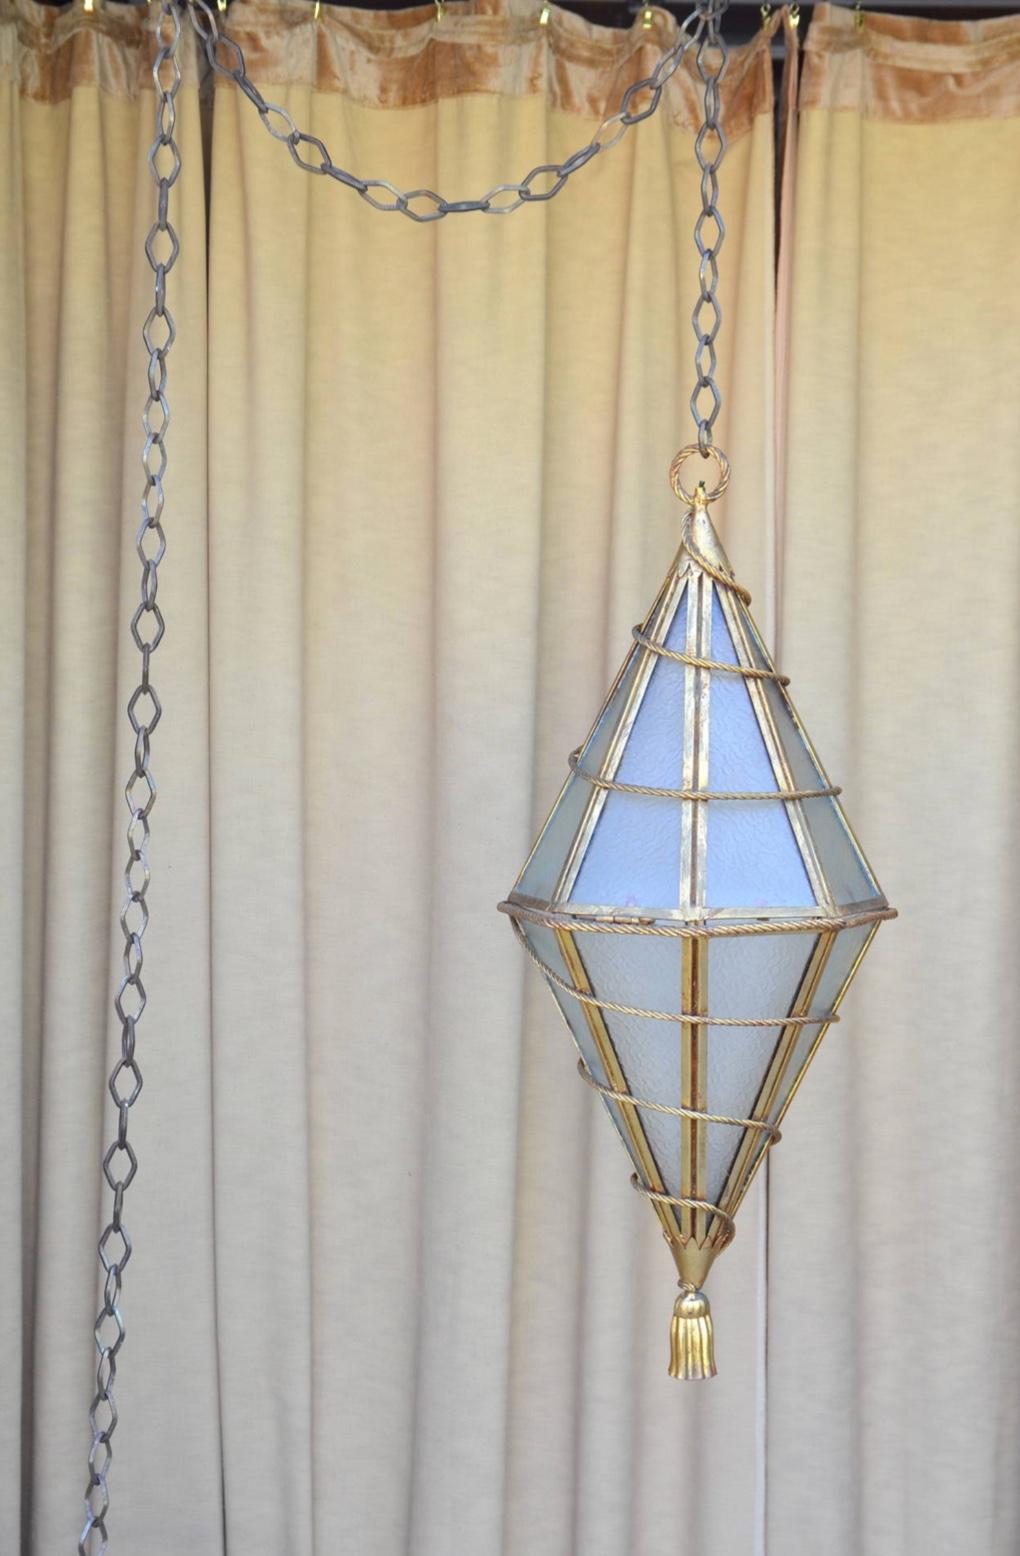 Spectaculaire lanterne géométrique italienne en métal doré à suspendre. Livré avec une chaîne personnalisée extra-longue (12 pieds).